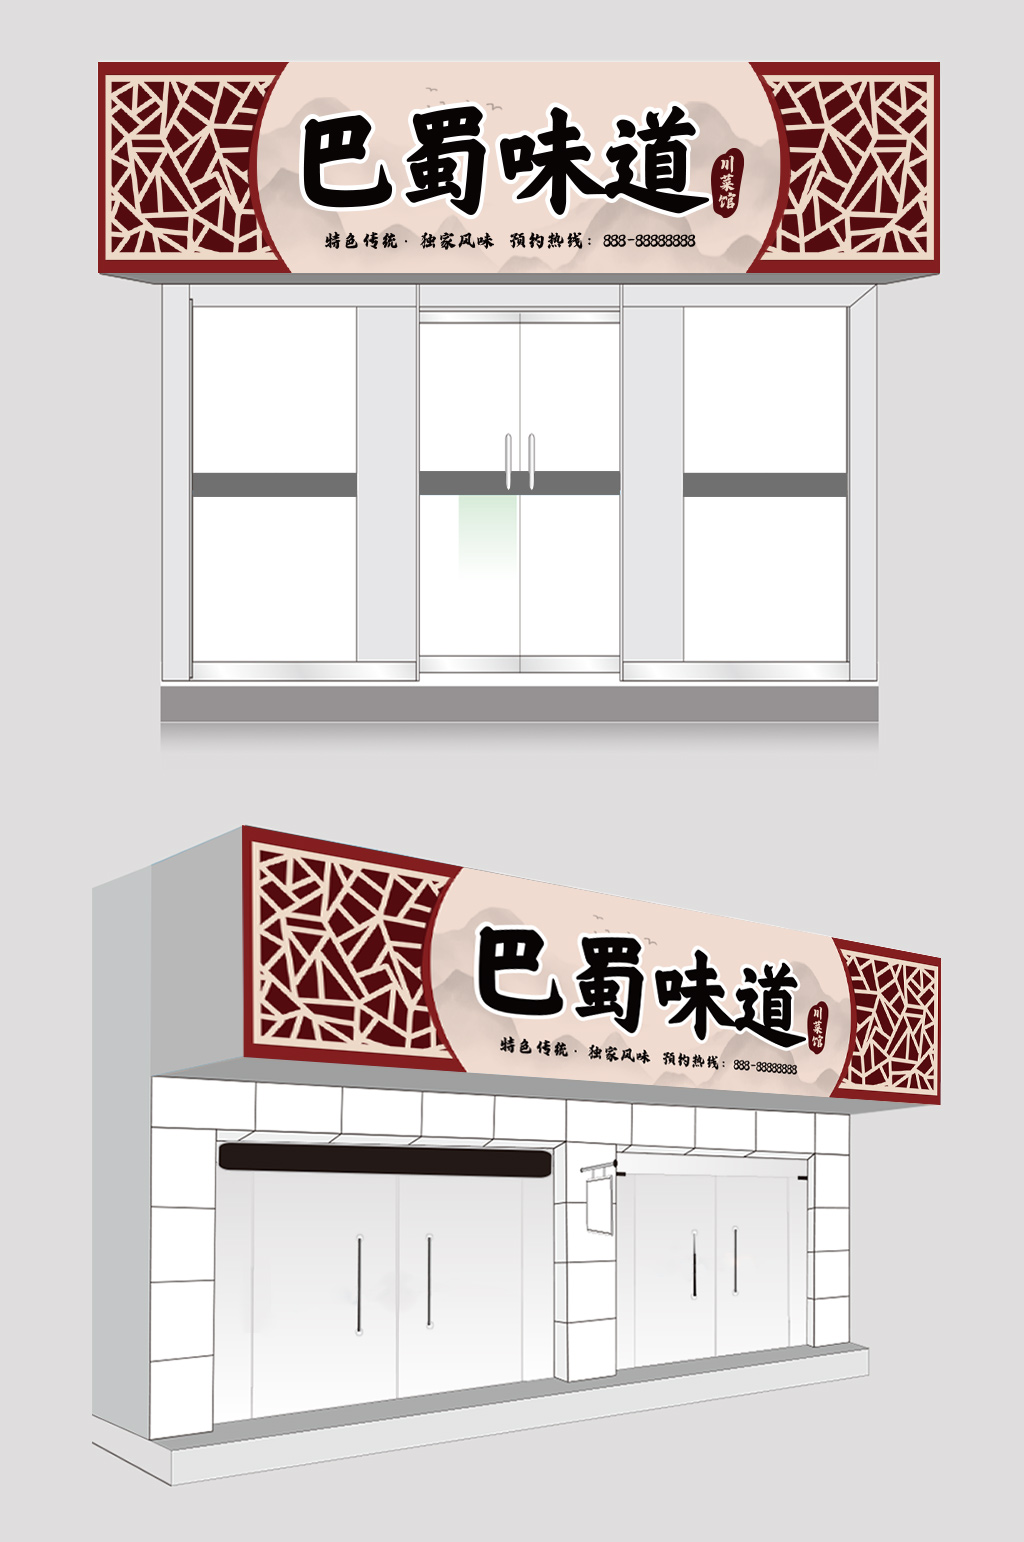 川菜馆招牌设计效果图图片